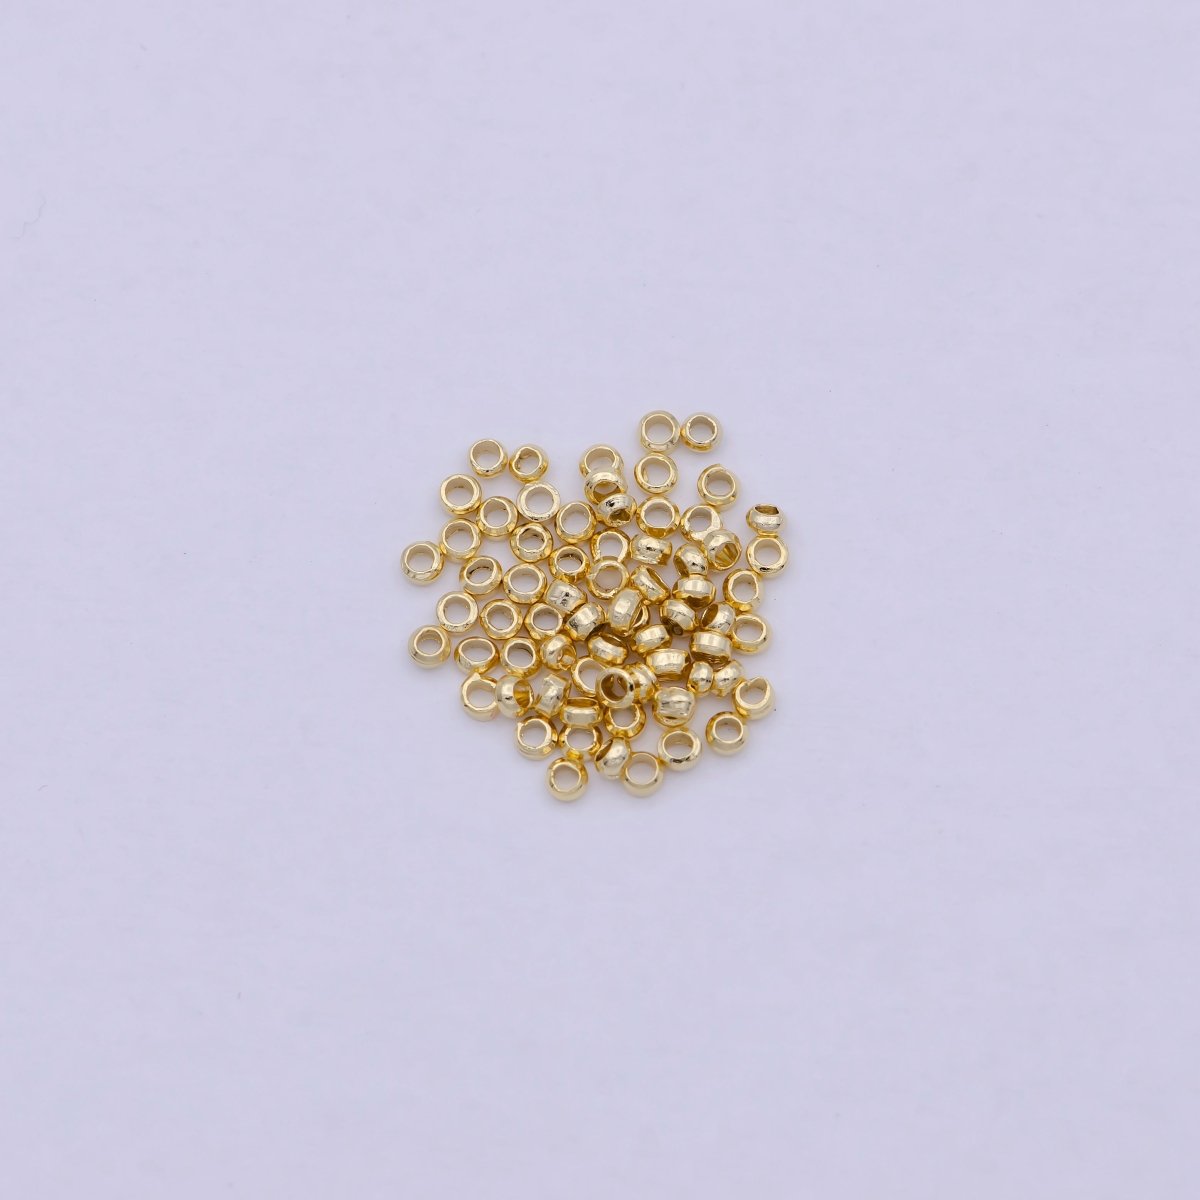 24K Gold Filled 2mm 2.5mm 3mm 4mm Crimp Cover Beads Supply Pack L-615~L-618 - DLUXCA